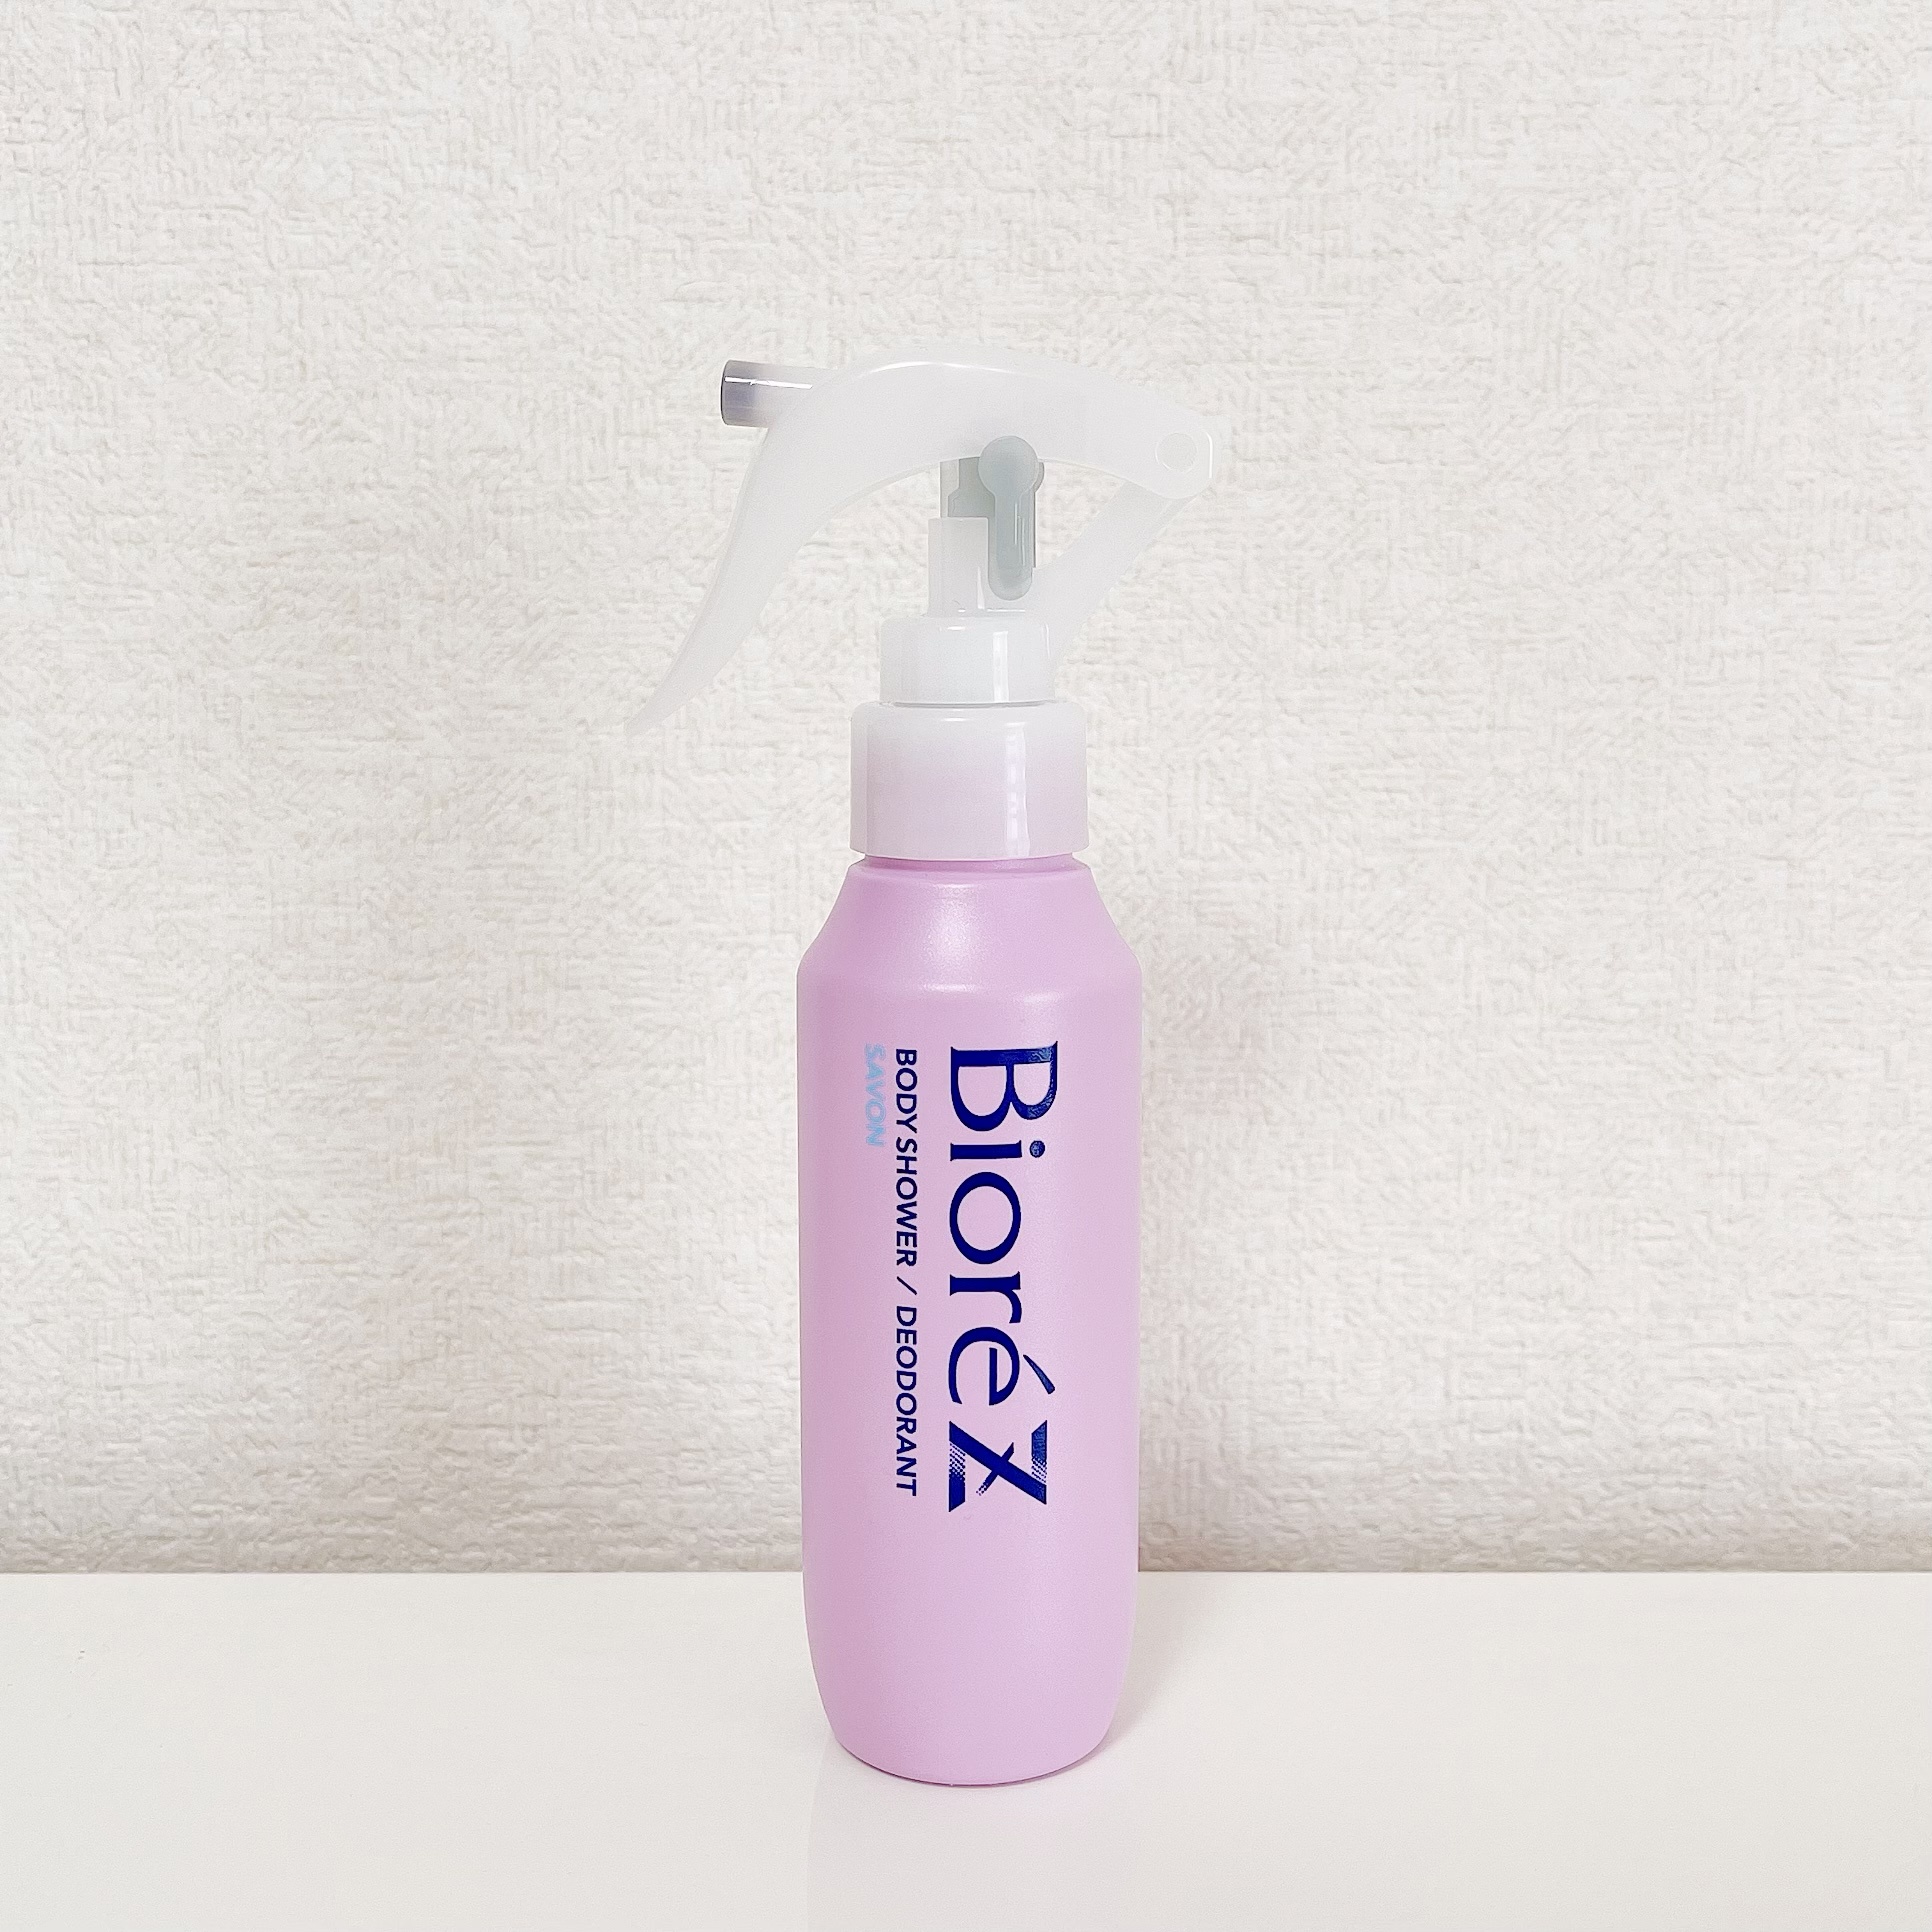 ビオレ / ビオレZ 薬用ボディシャワー せっけんの香りの公式商品情報 